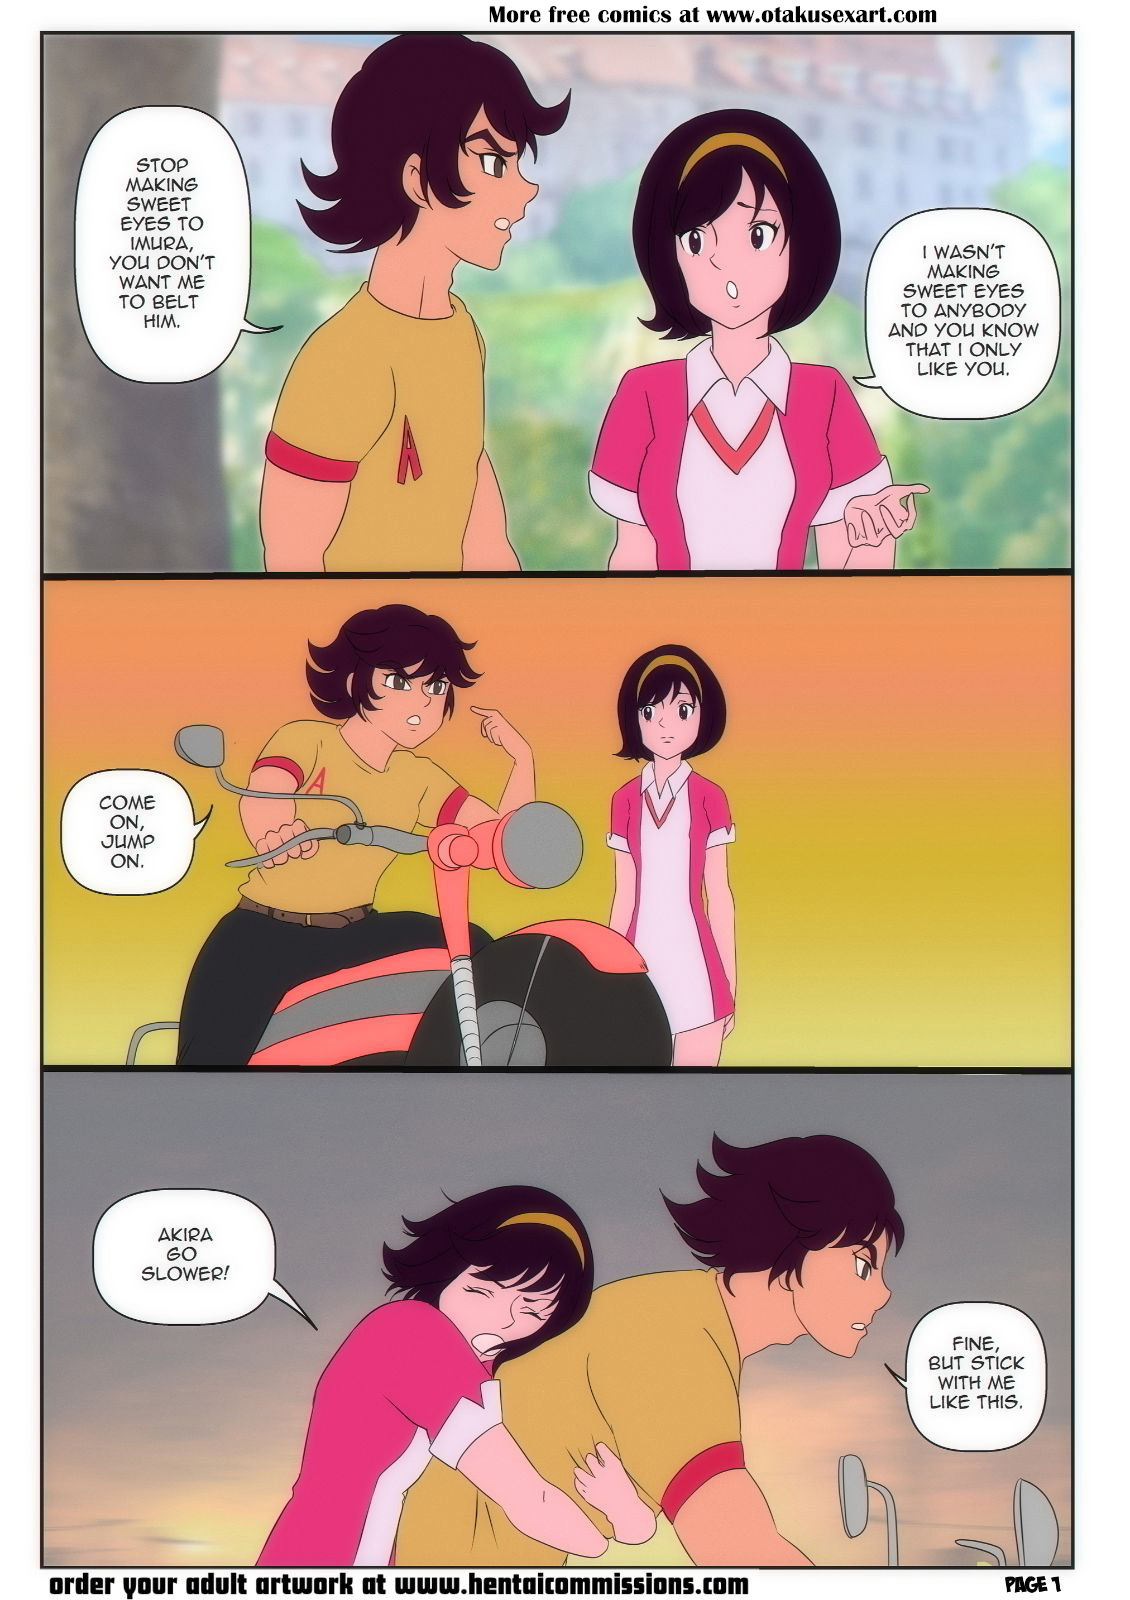 Hentai Miki Online Free - Hentai Comic: Akira and Miki, Finally Together | Otakusexart